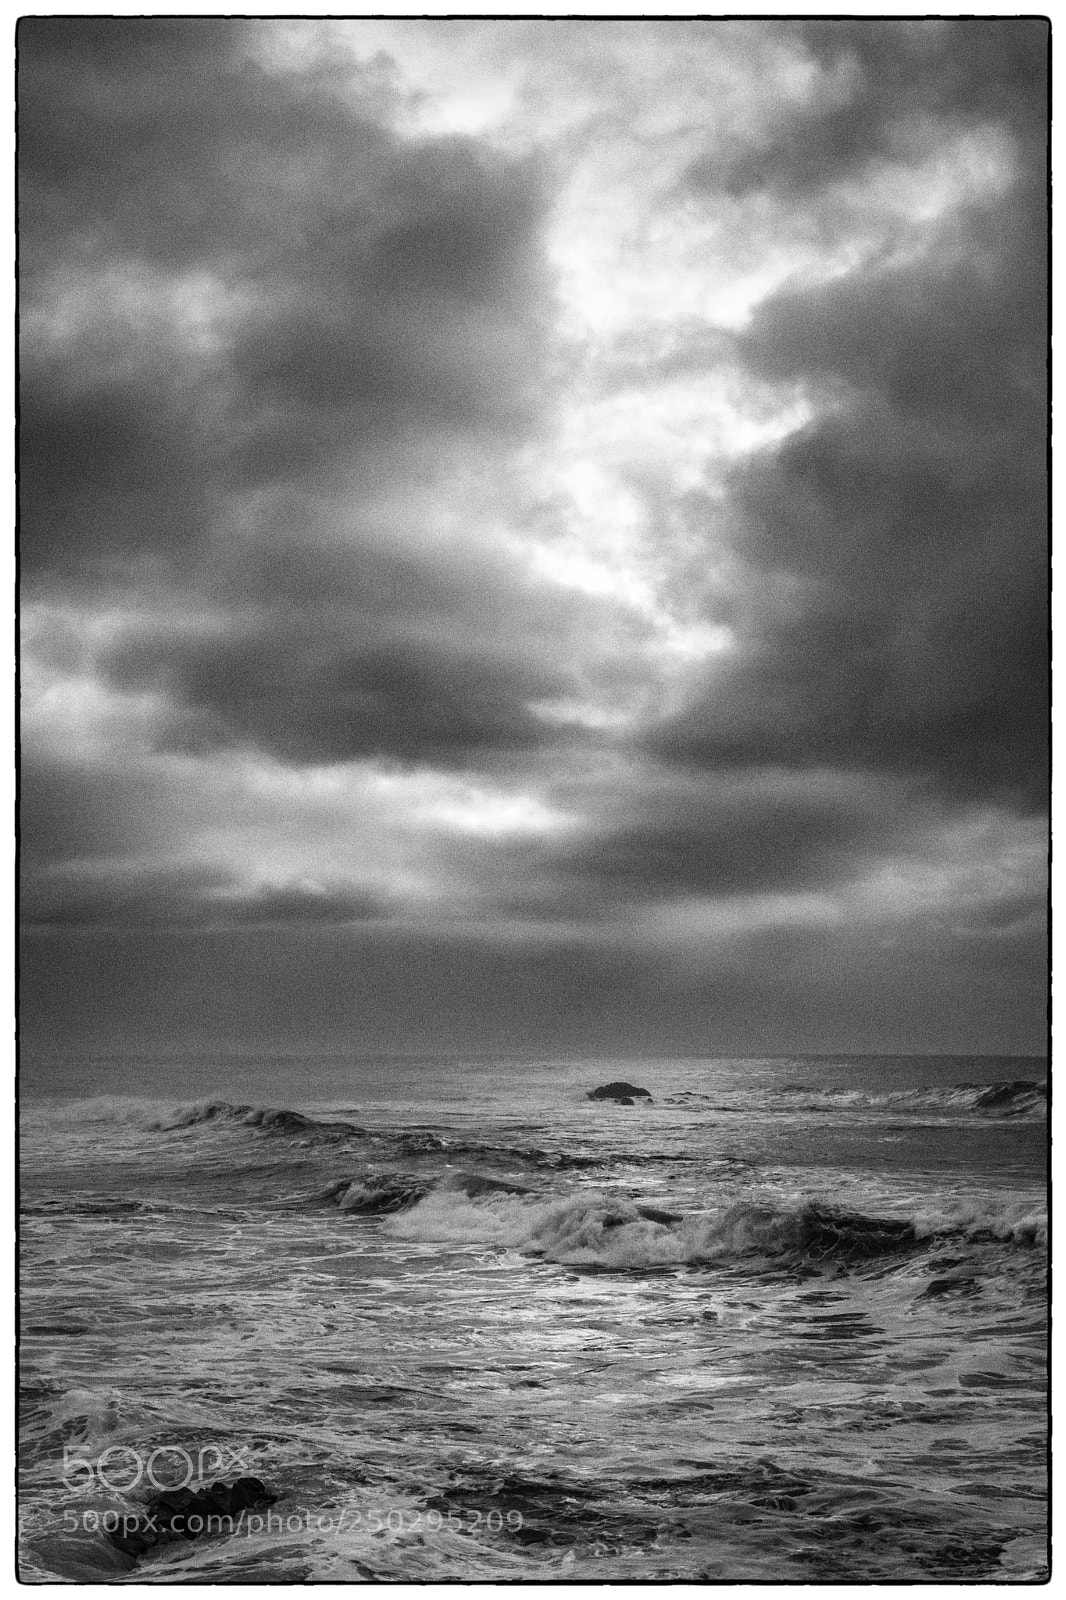 Nikon D7100 sample photo. Storm at sea photography